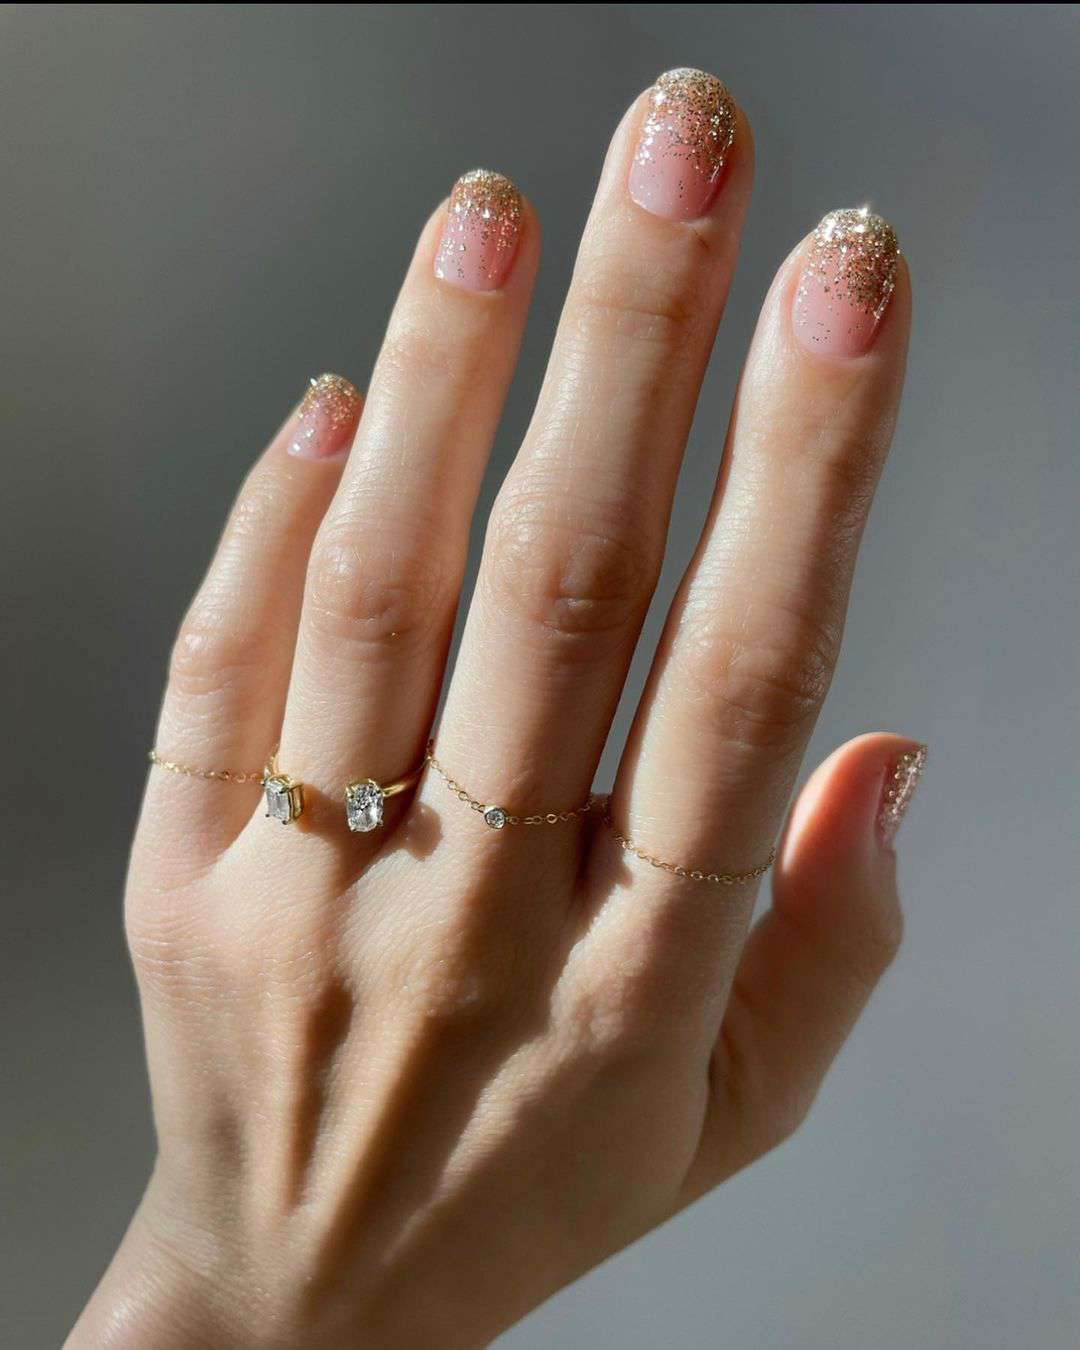 Ideas de uñas que favorecen mucho si tienes la piel clara: Brillos y acabados metálicos